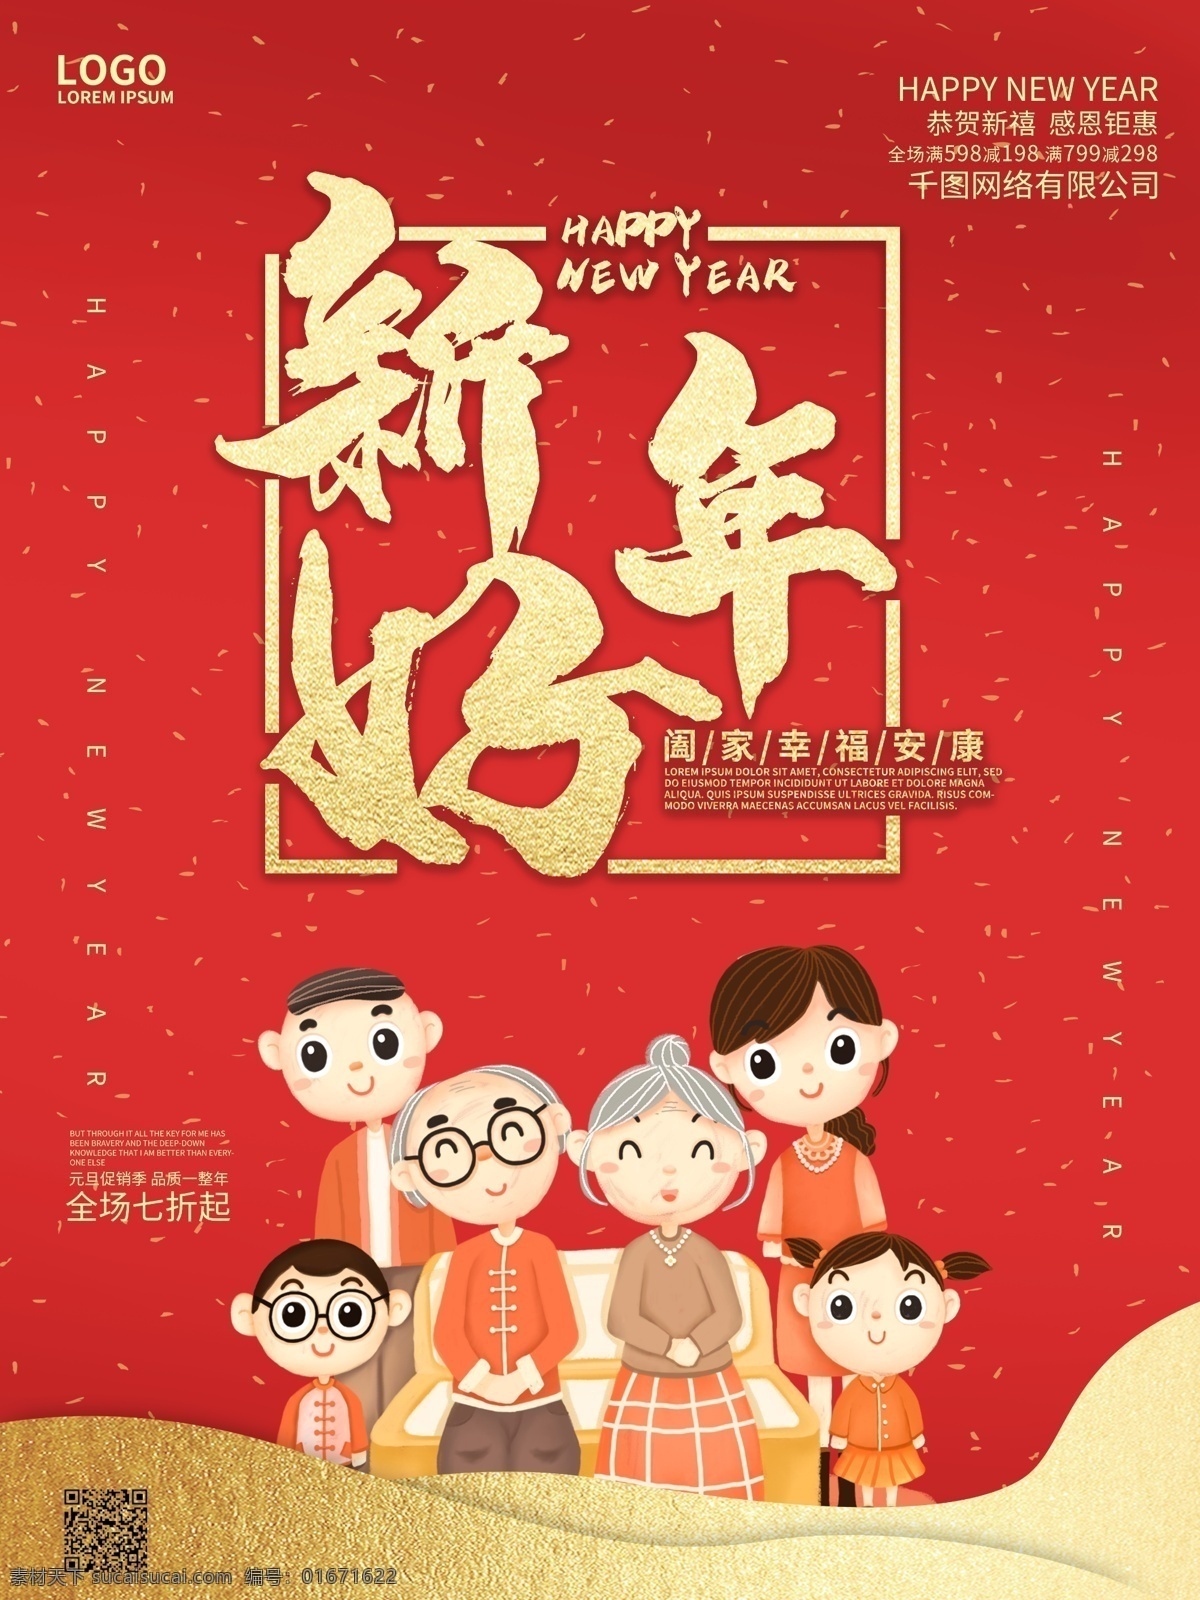 中国 风 喜庆 新年 祝福 节日 海报 中国风 拜年 春节 过年 节日海报